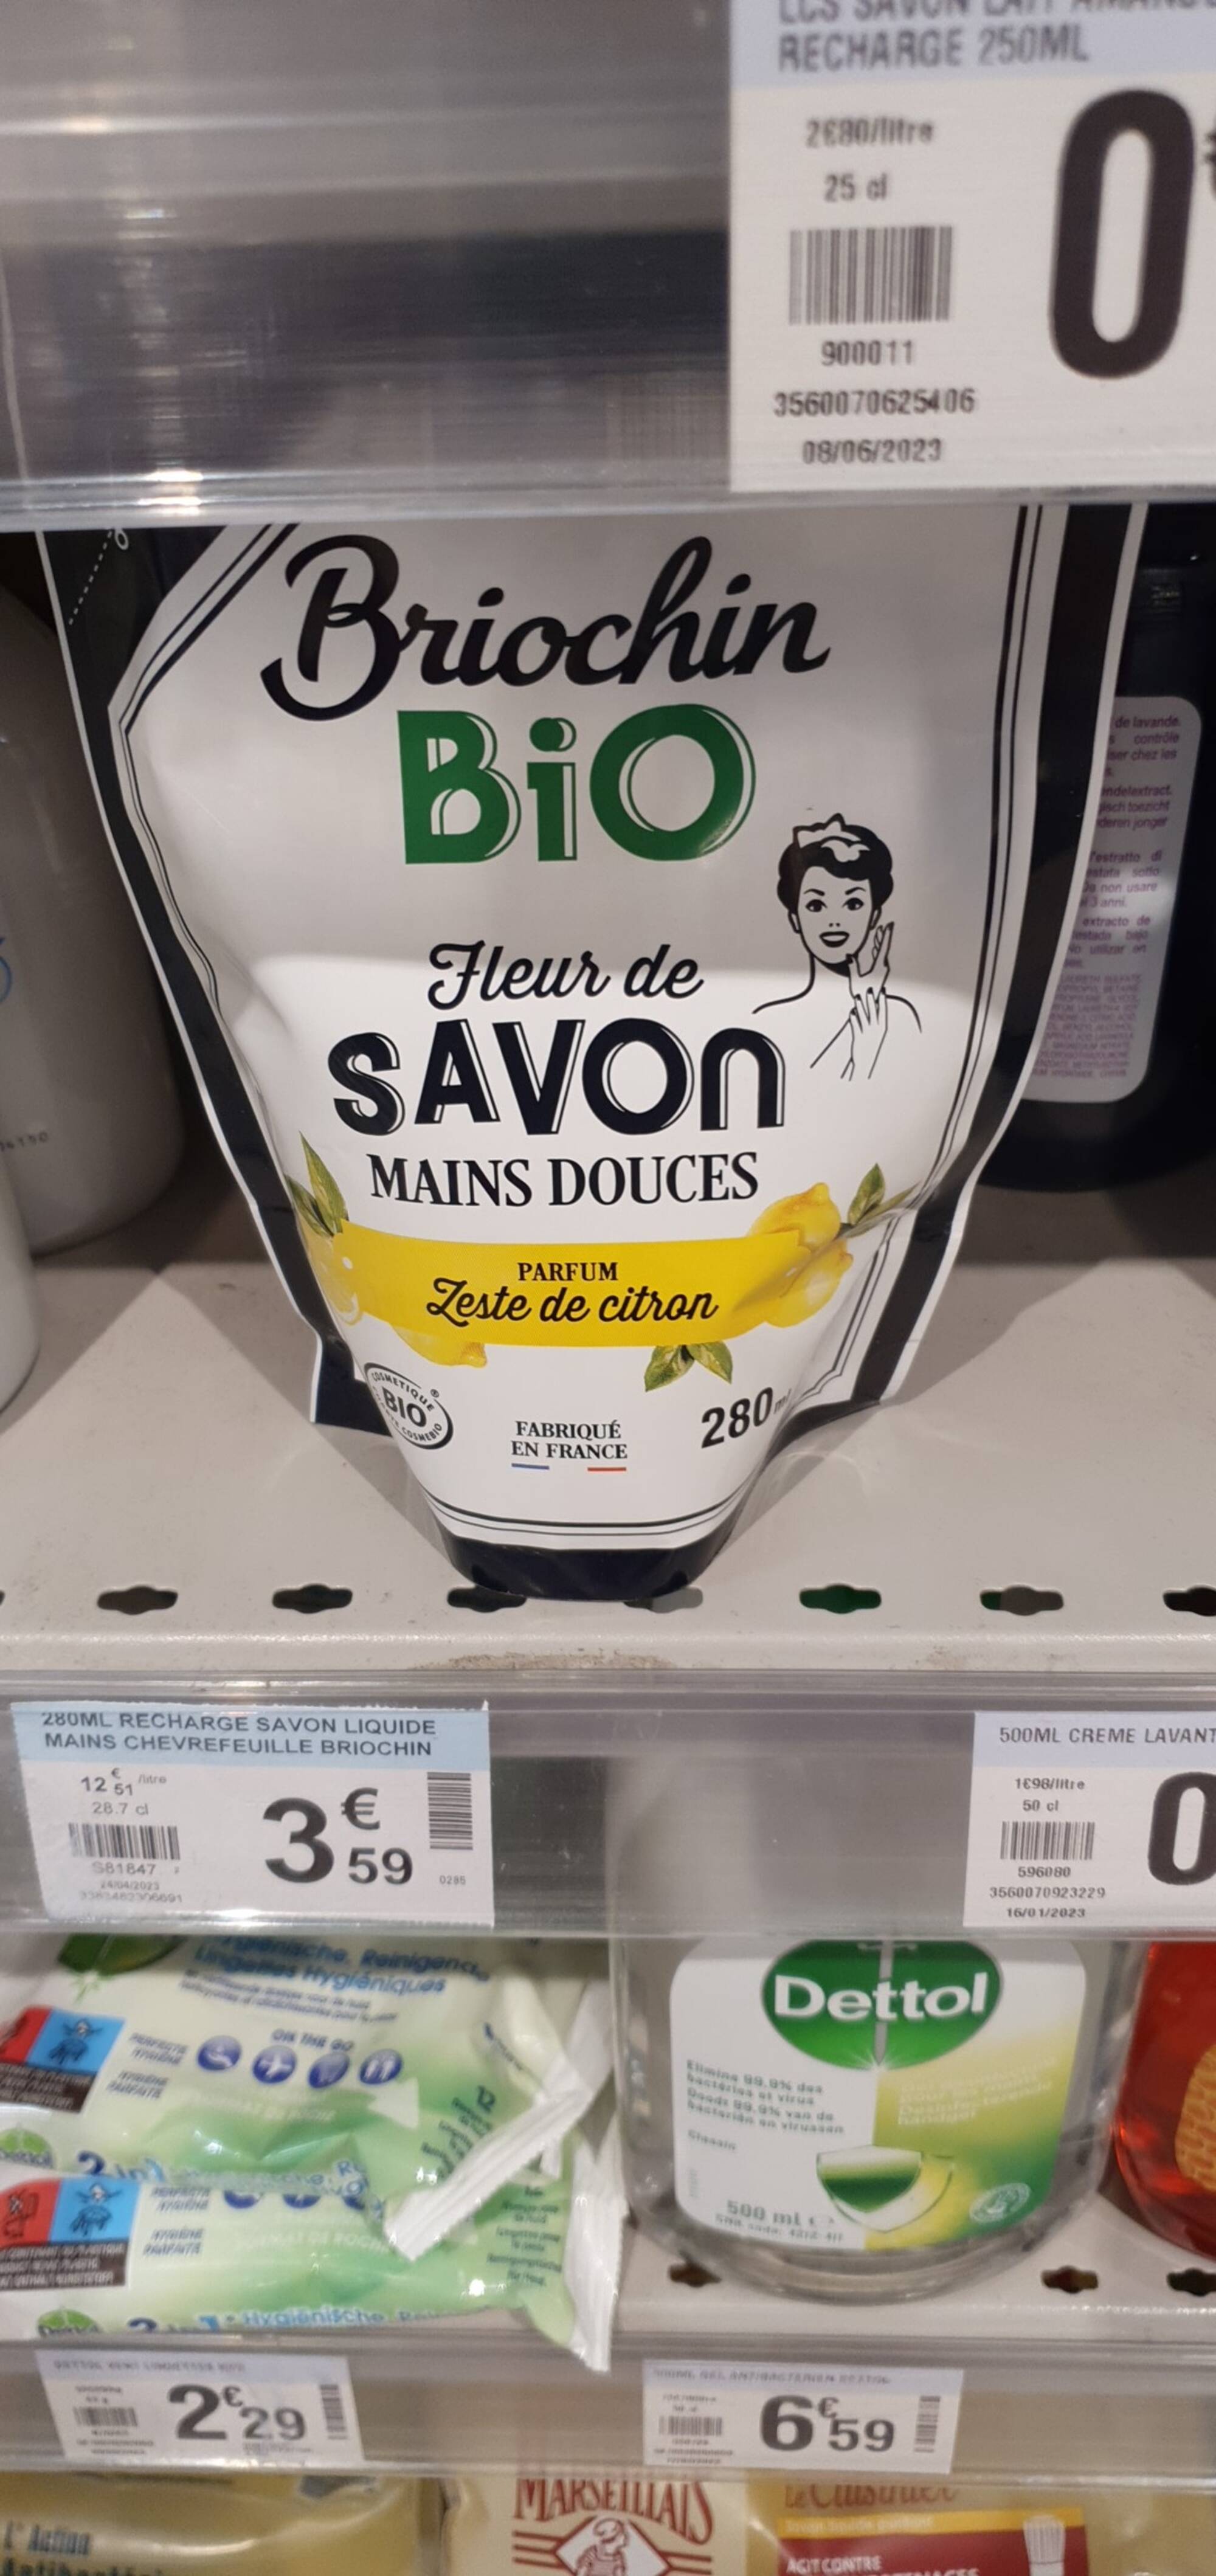 BRIOCHIN - Bio - Fleur de savon mains douces parfum zeste de citron